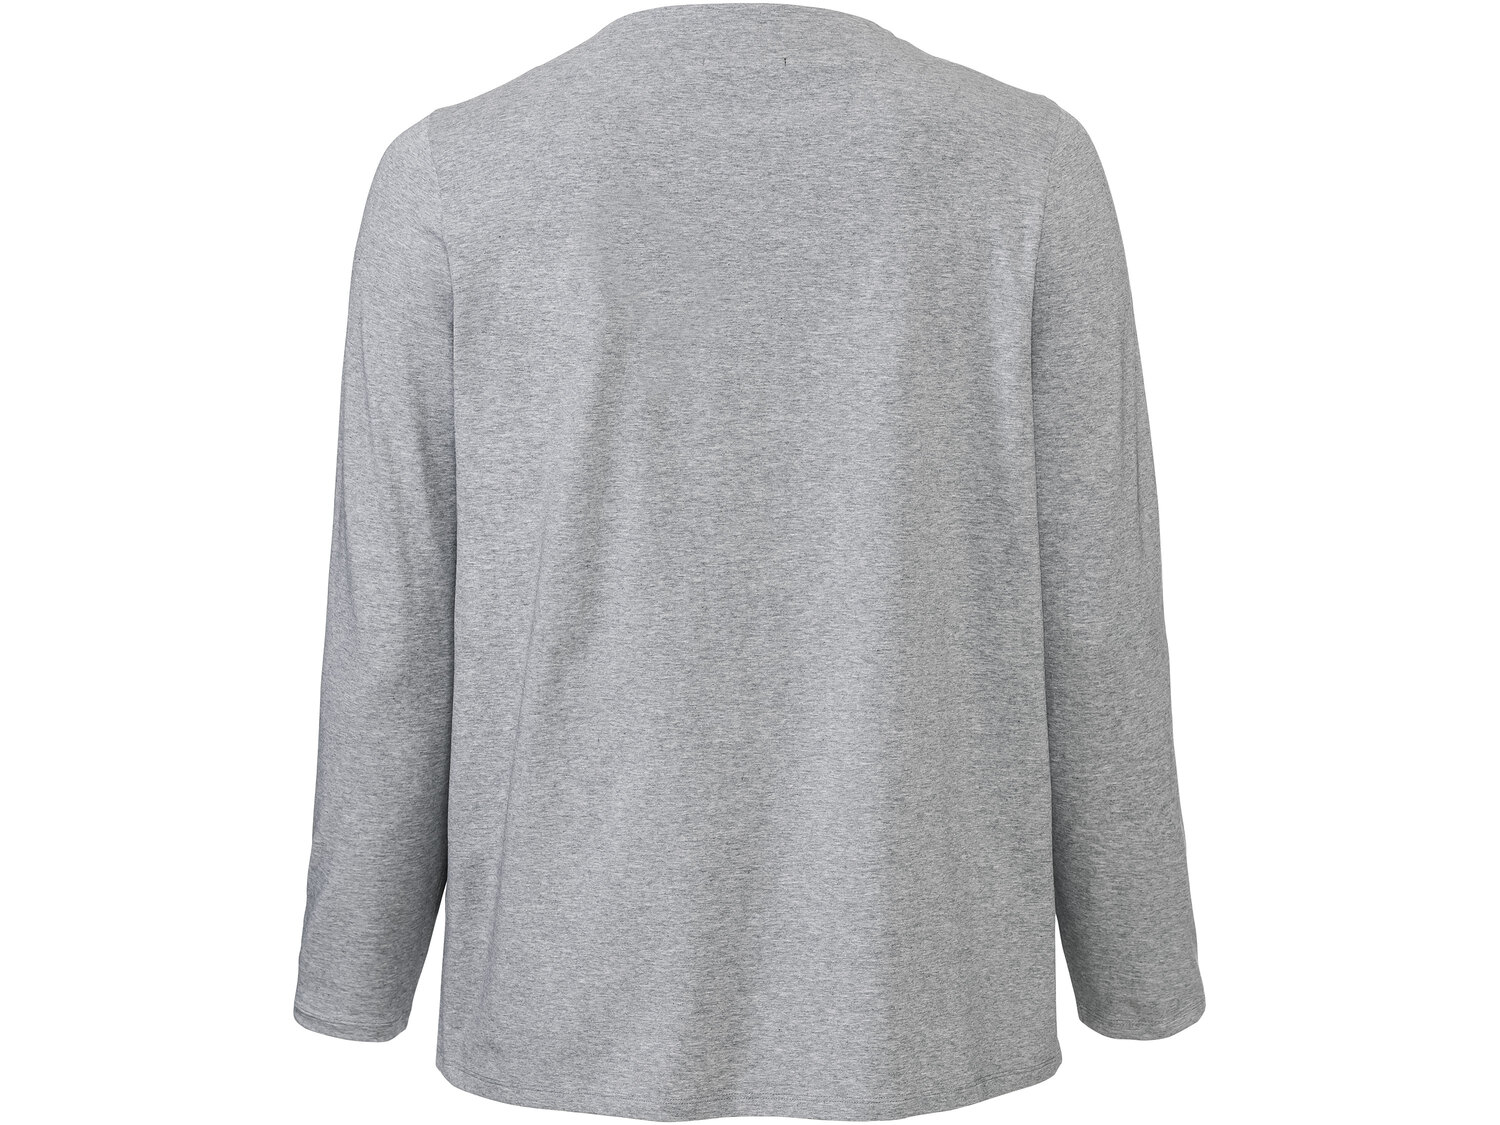 Bluzka damska z bawełny Esmara, cena 29,99 PLN 
- 95% bawełny, 5% elastanu (LYCRA®)
- ...